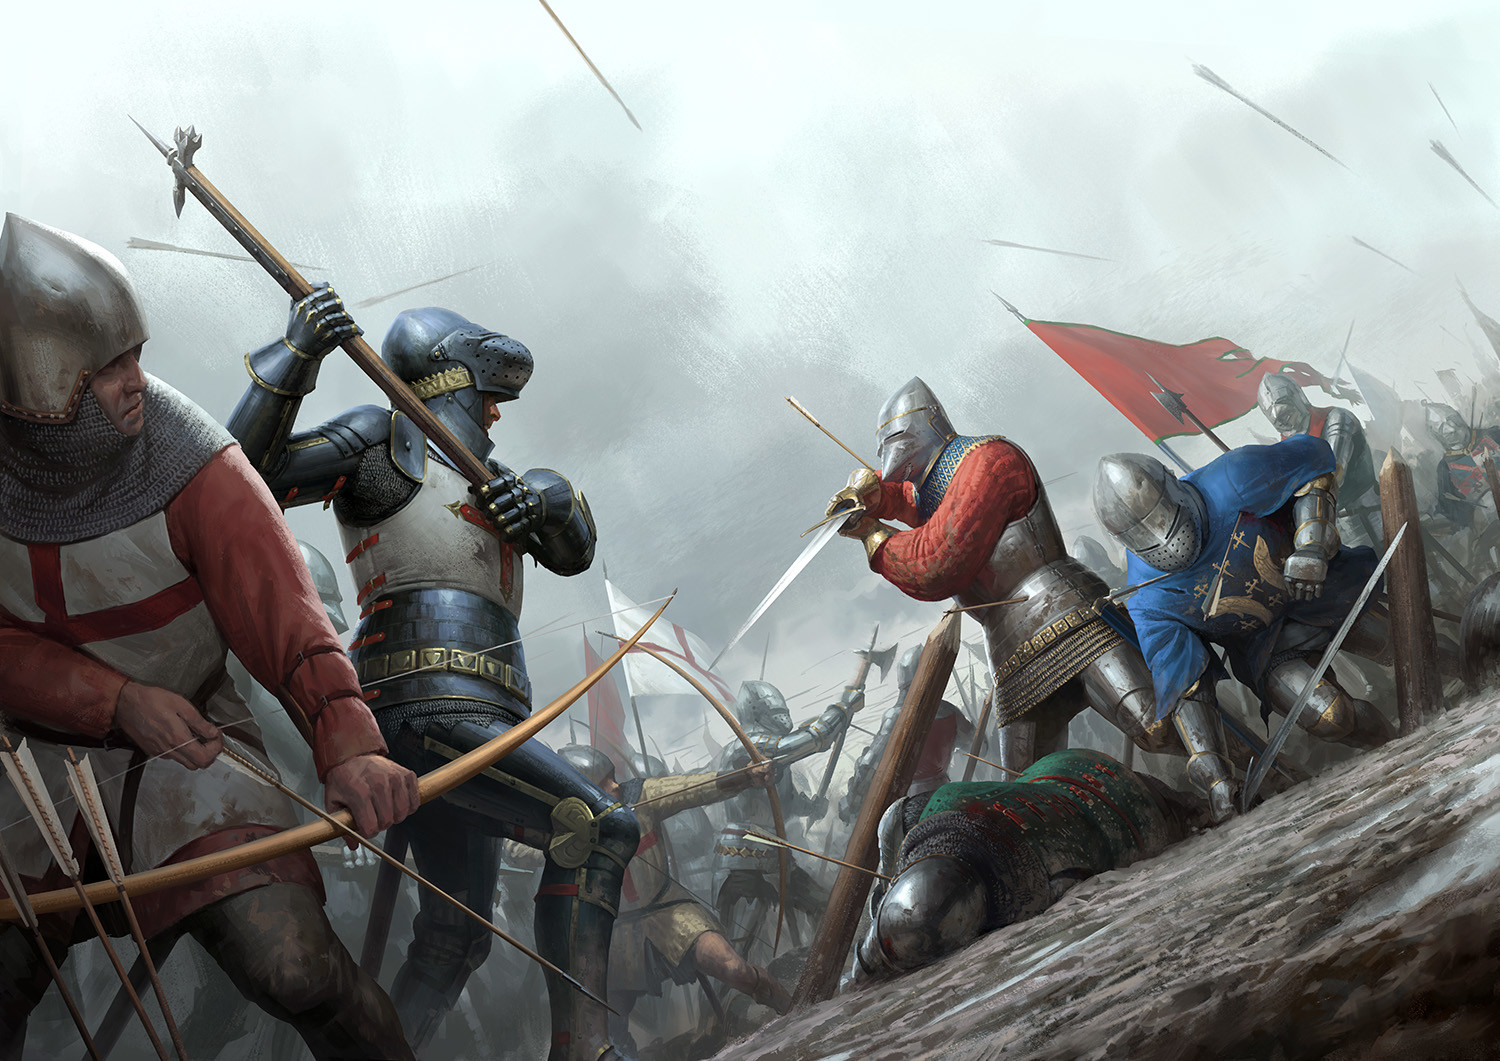 Battle Of Agincourt by Darren Tan